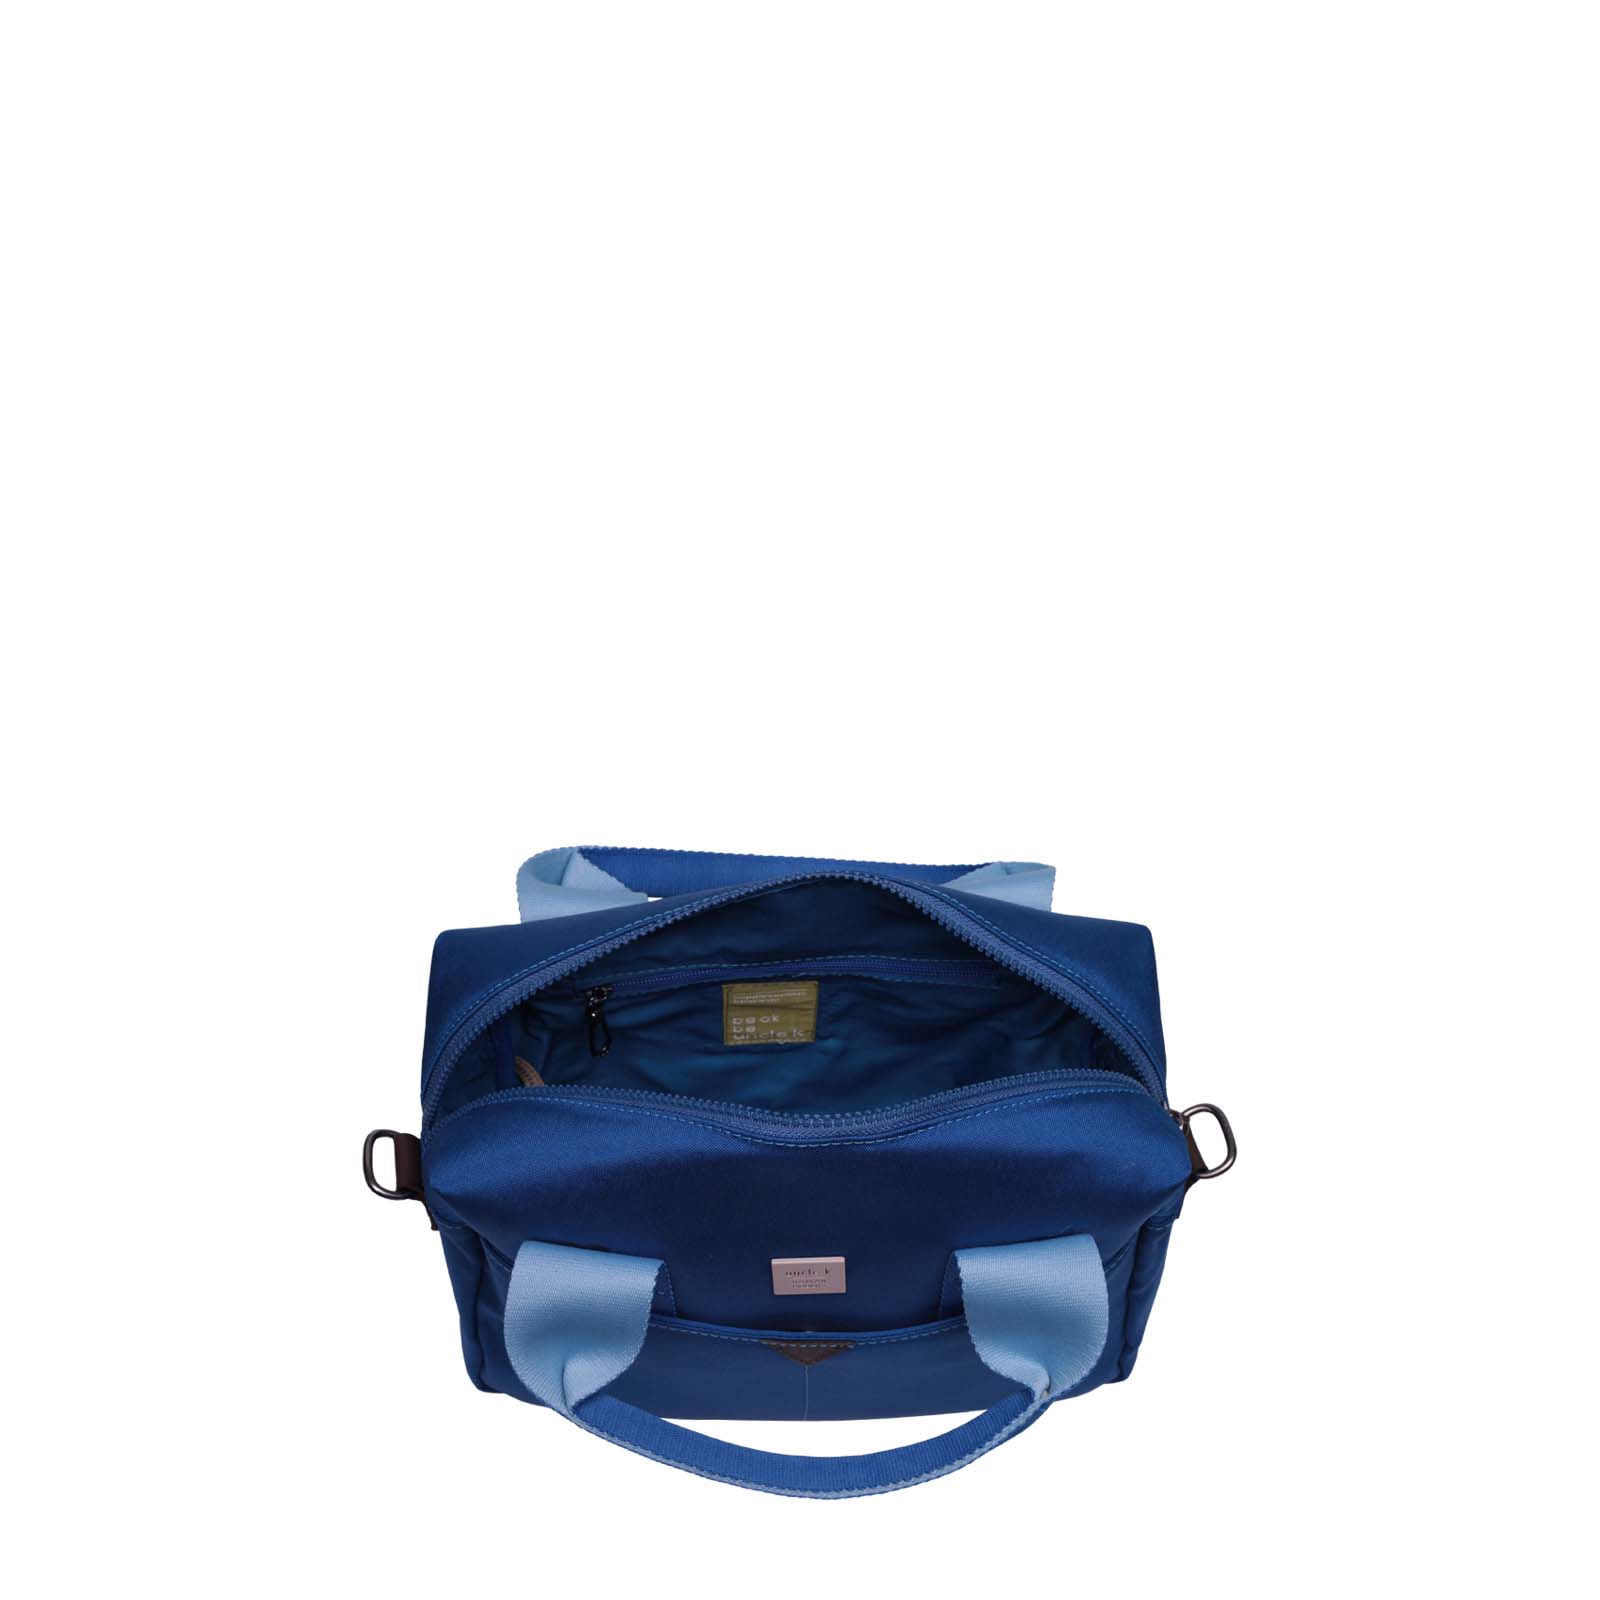 bolsa-nylon-61089-v24-unclek-azul-4